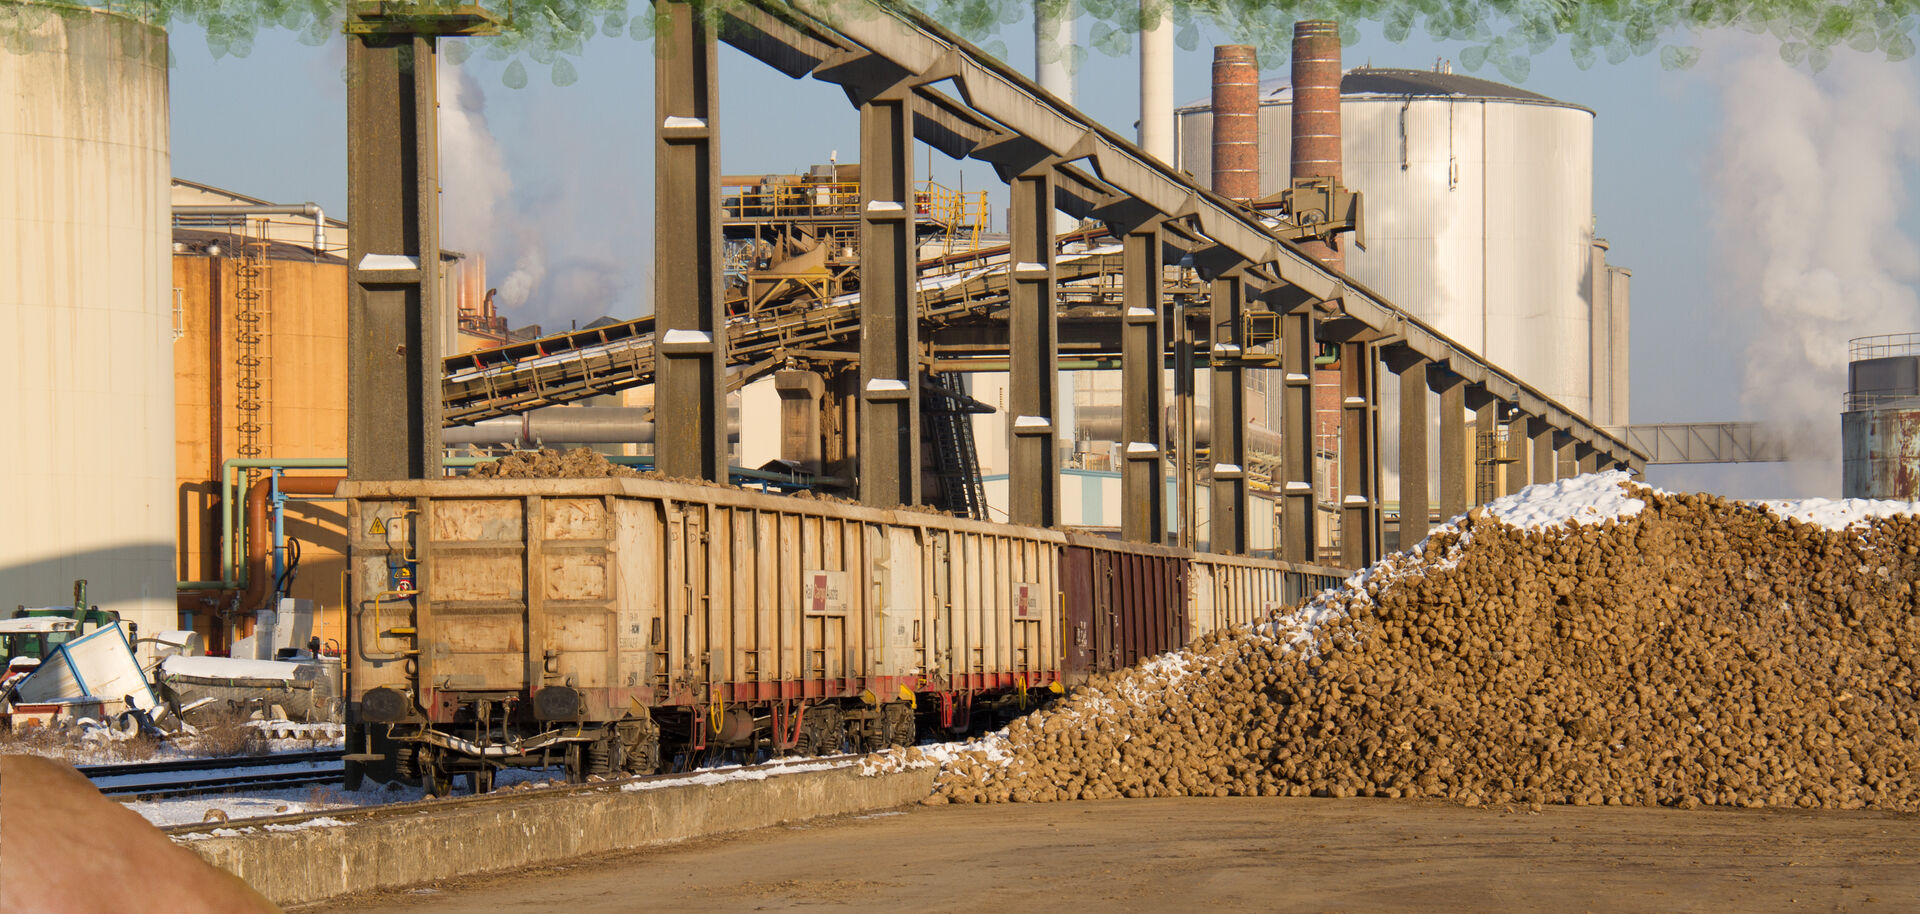 Haufen Zuckerrüben neben Fabrik | © Land schafft Leben